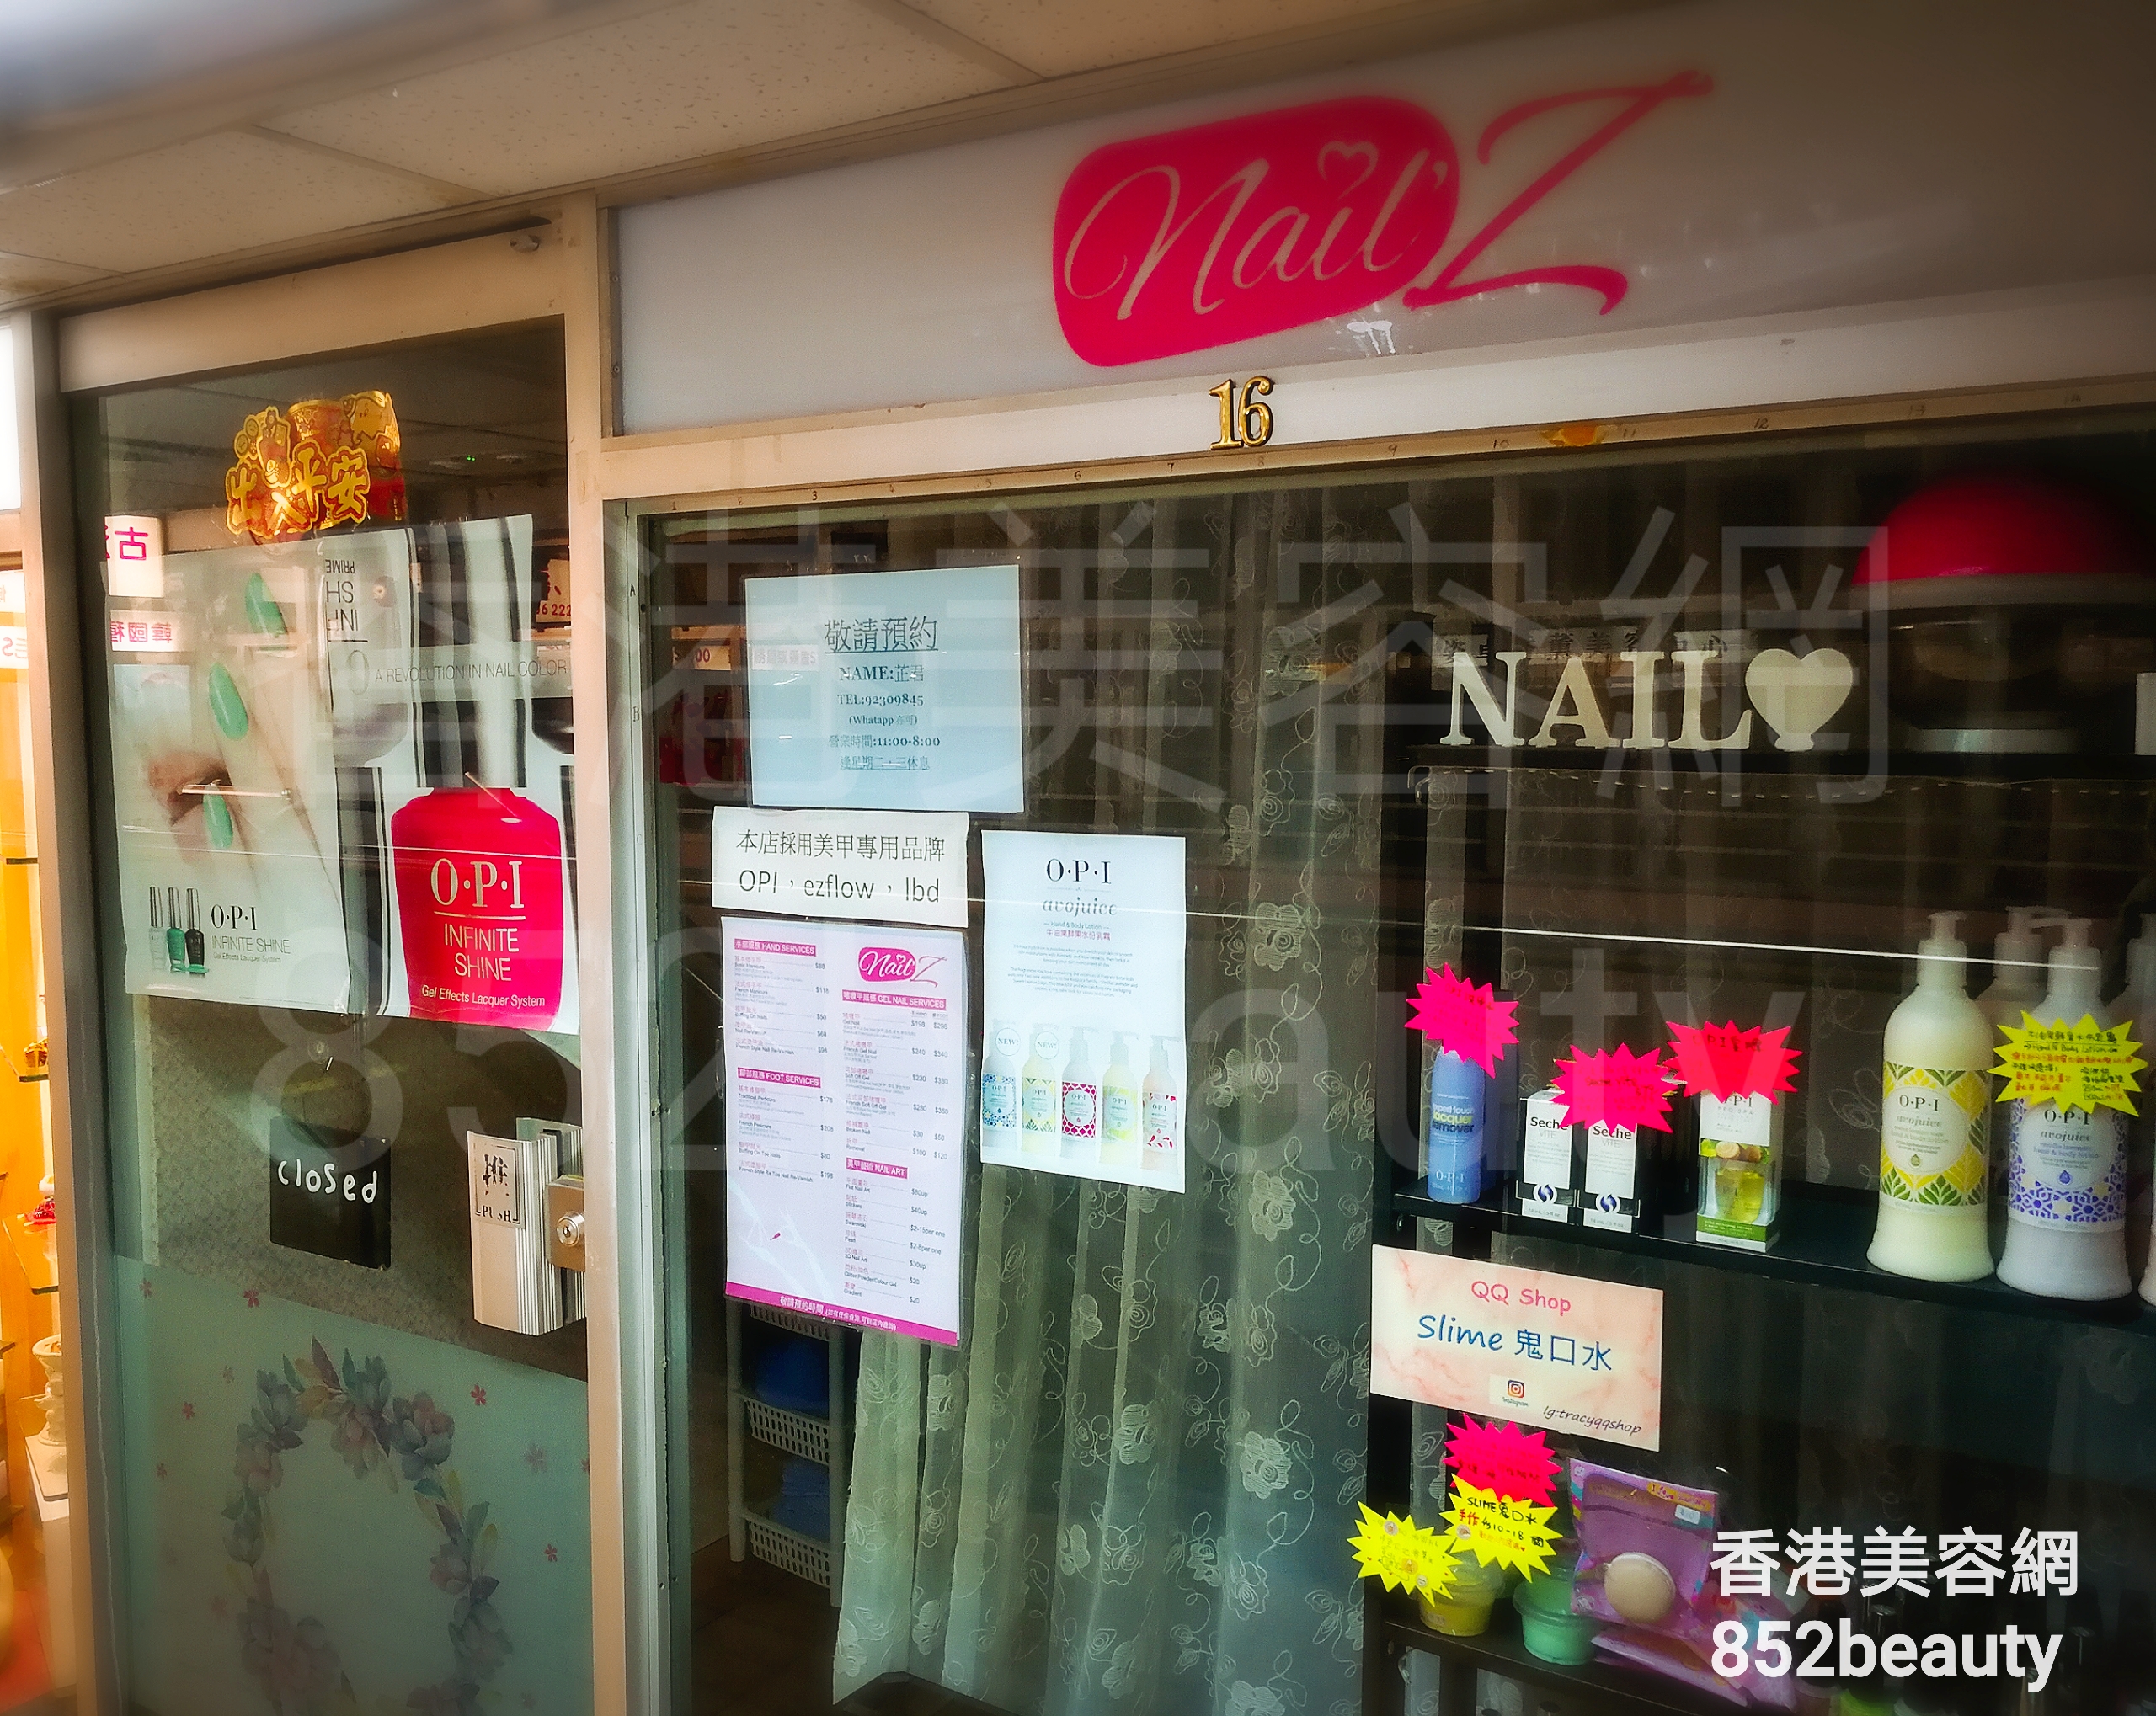 香港美容網 Hong Kong Beauty Salon 美容院 / 美容師: Nail Z